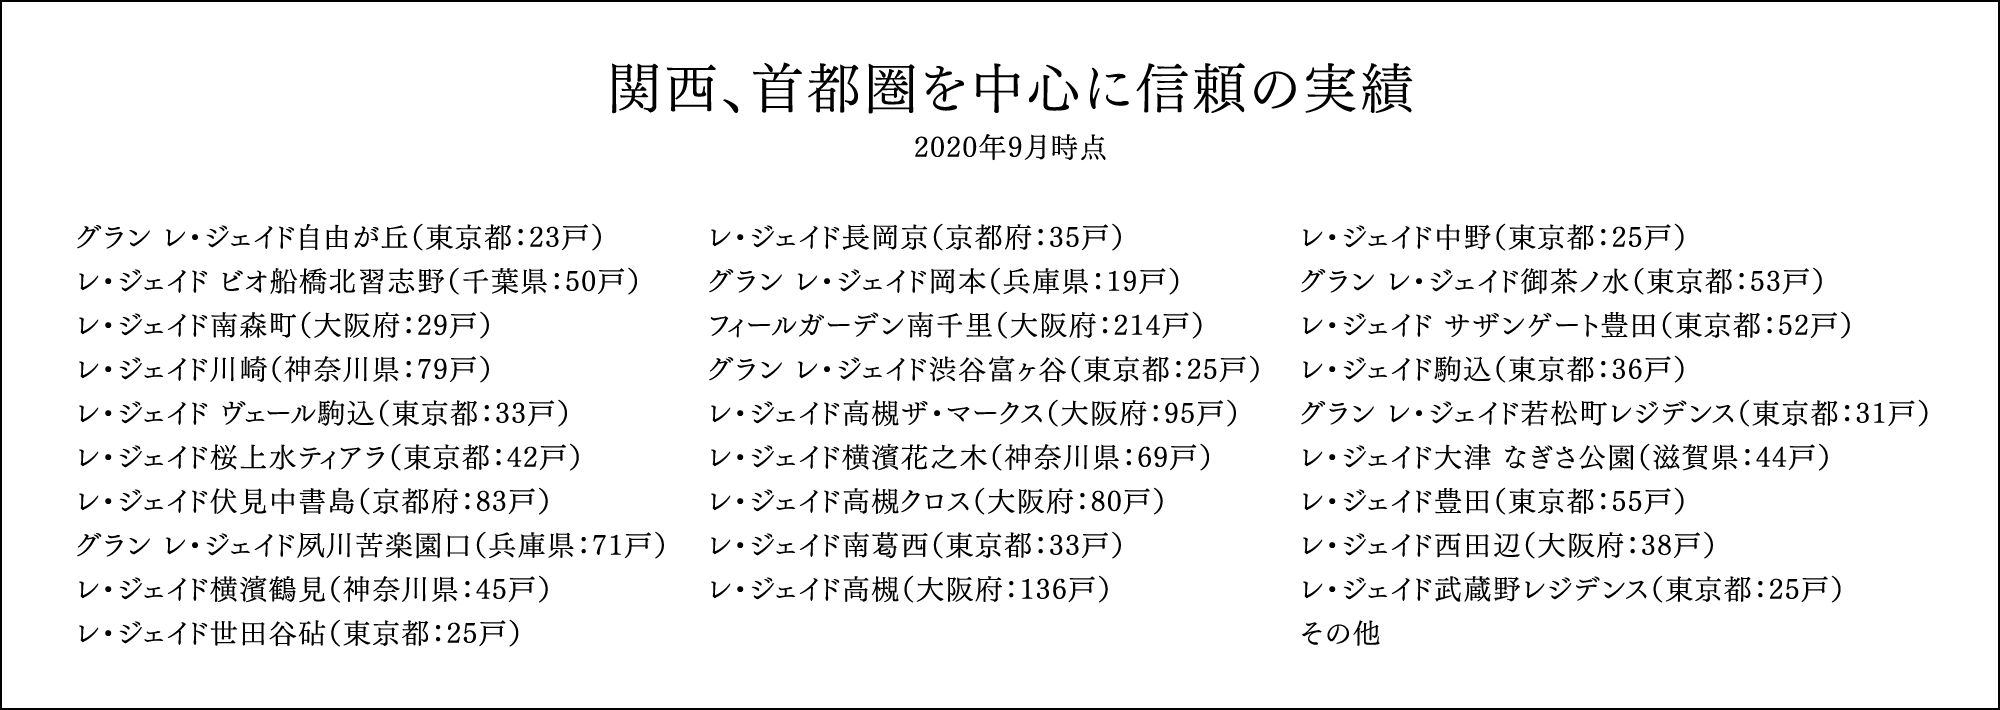 関西、首都圏を中心に信頼の実績 2020年9月時点